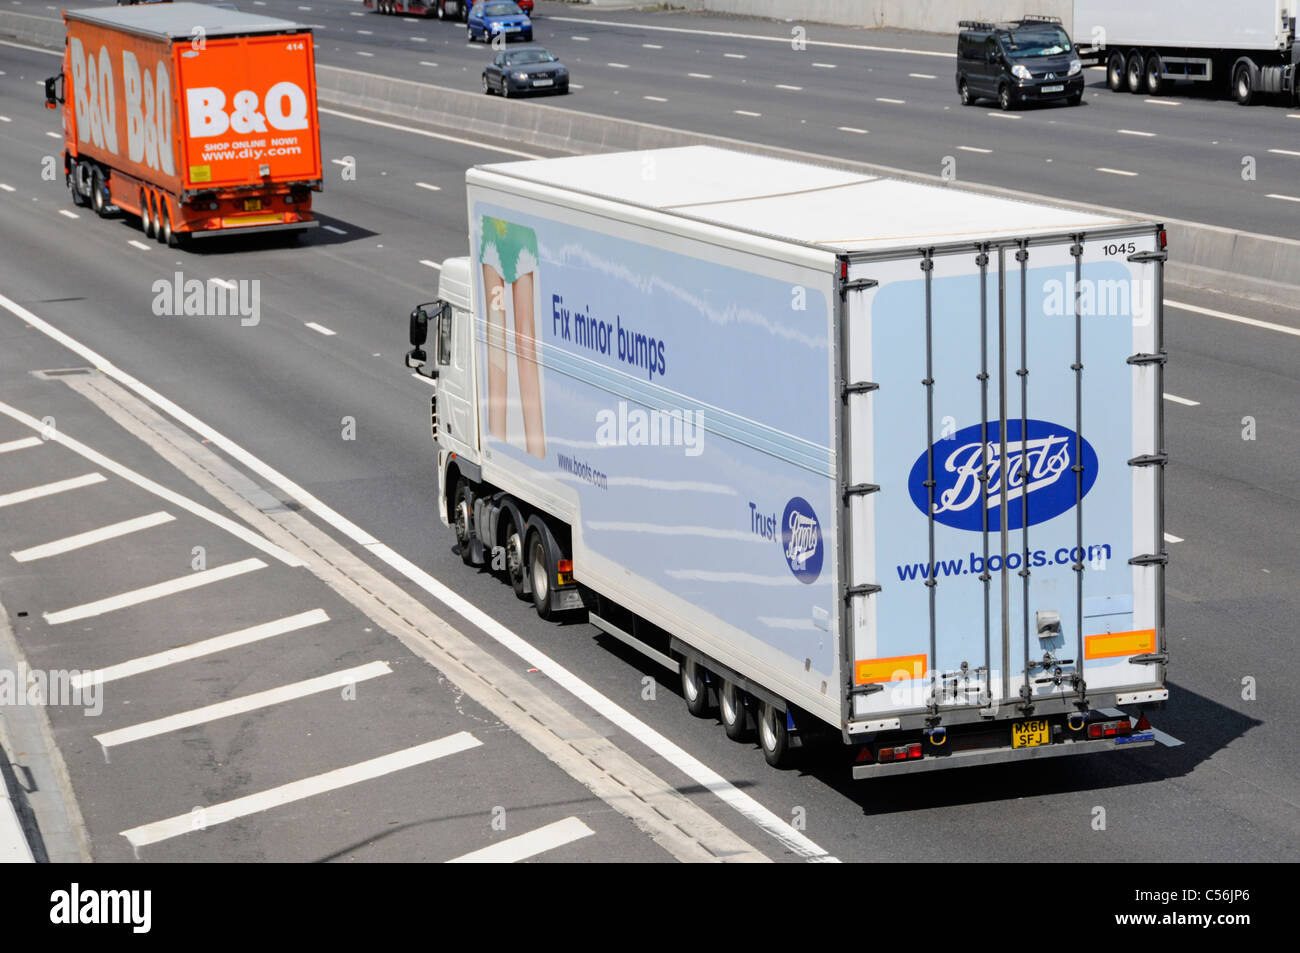 Boots pharmacy business supply chain & poids lourds camion avec remorque camion de distribution à la suite de B&Q magasin de bricolage les véhicules de livraison en voiture sur l'autoroute britannique Banque D'Images